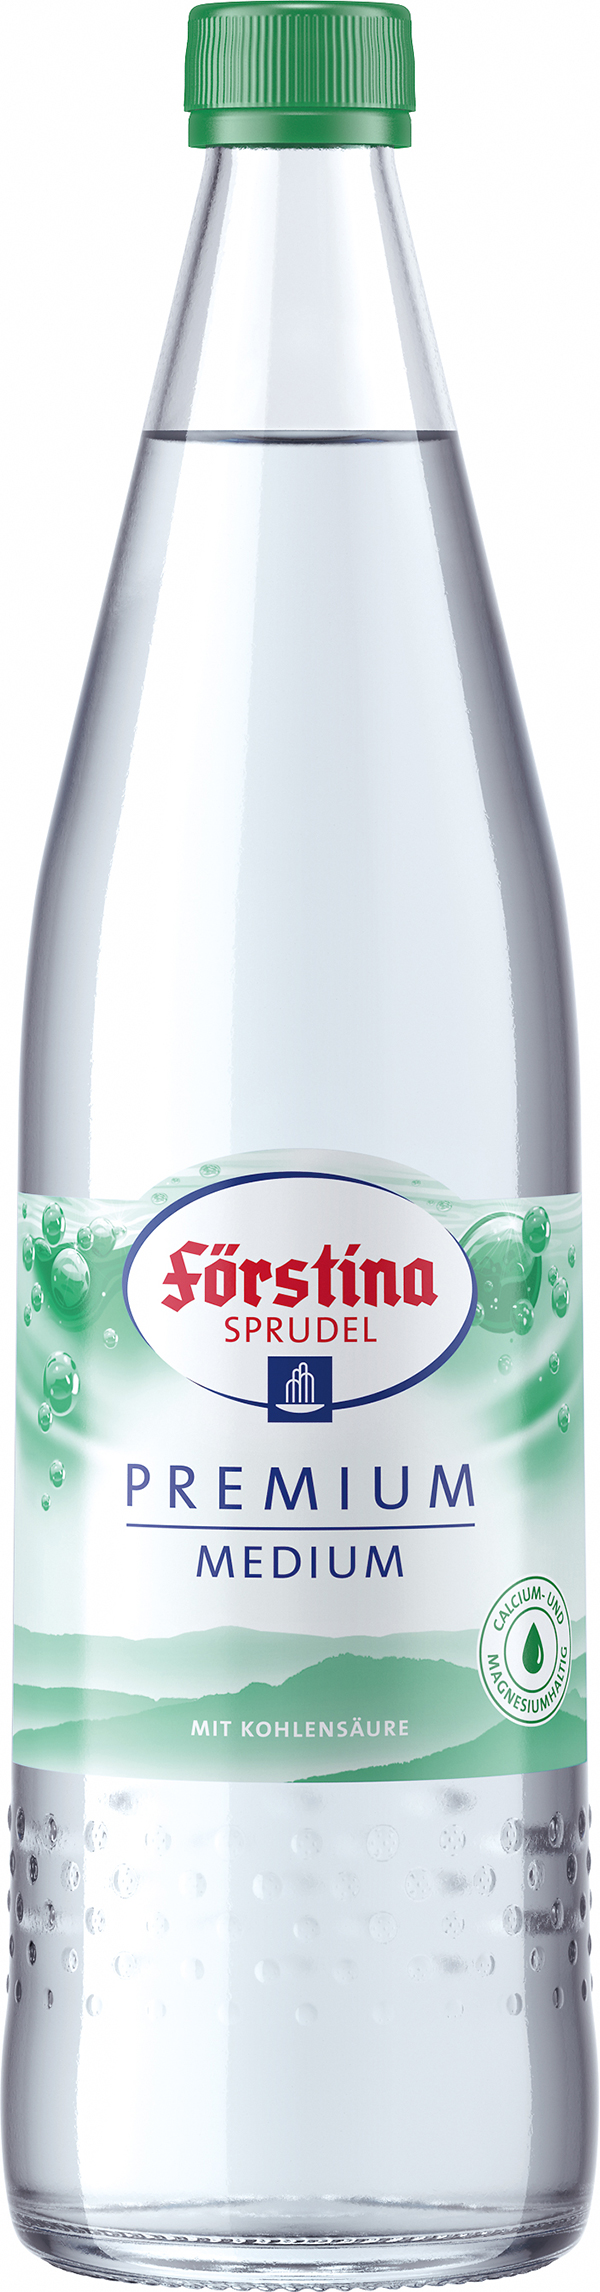 Förstina Sprudel Premium Medium 12 x 0,7 l (Glas)